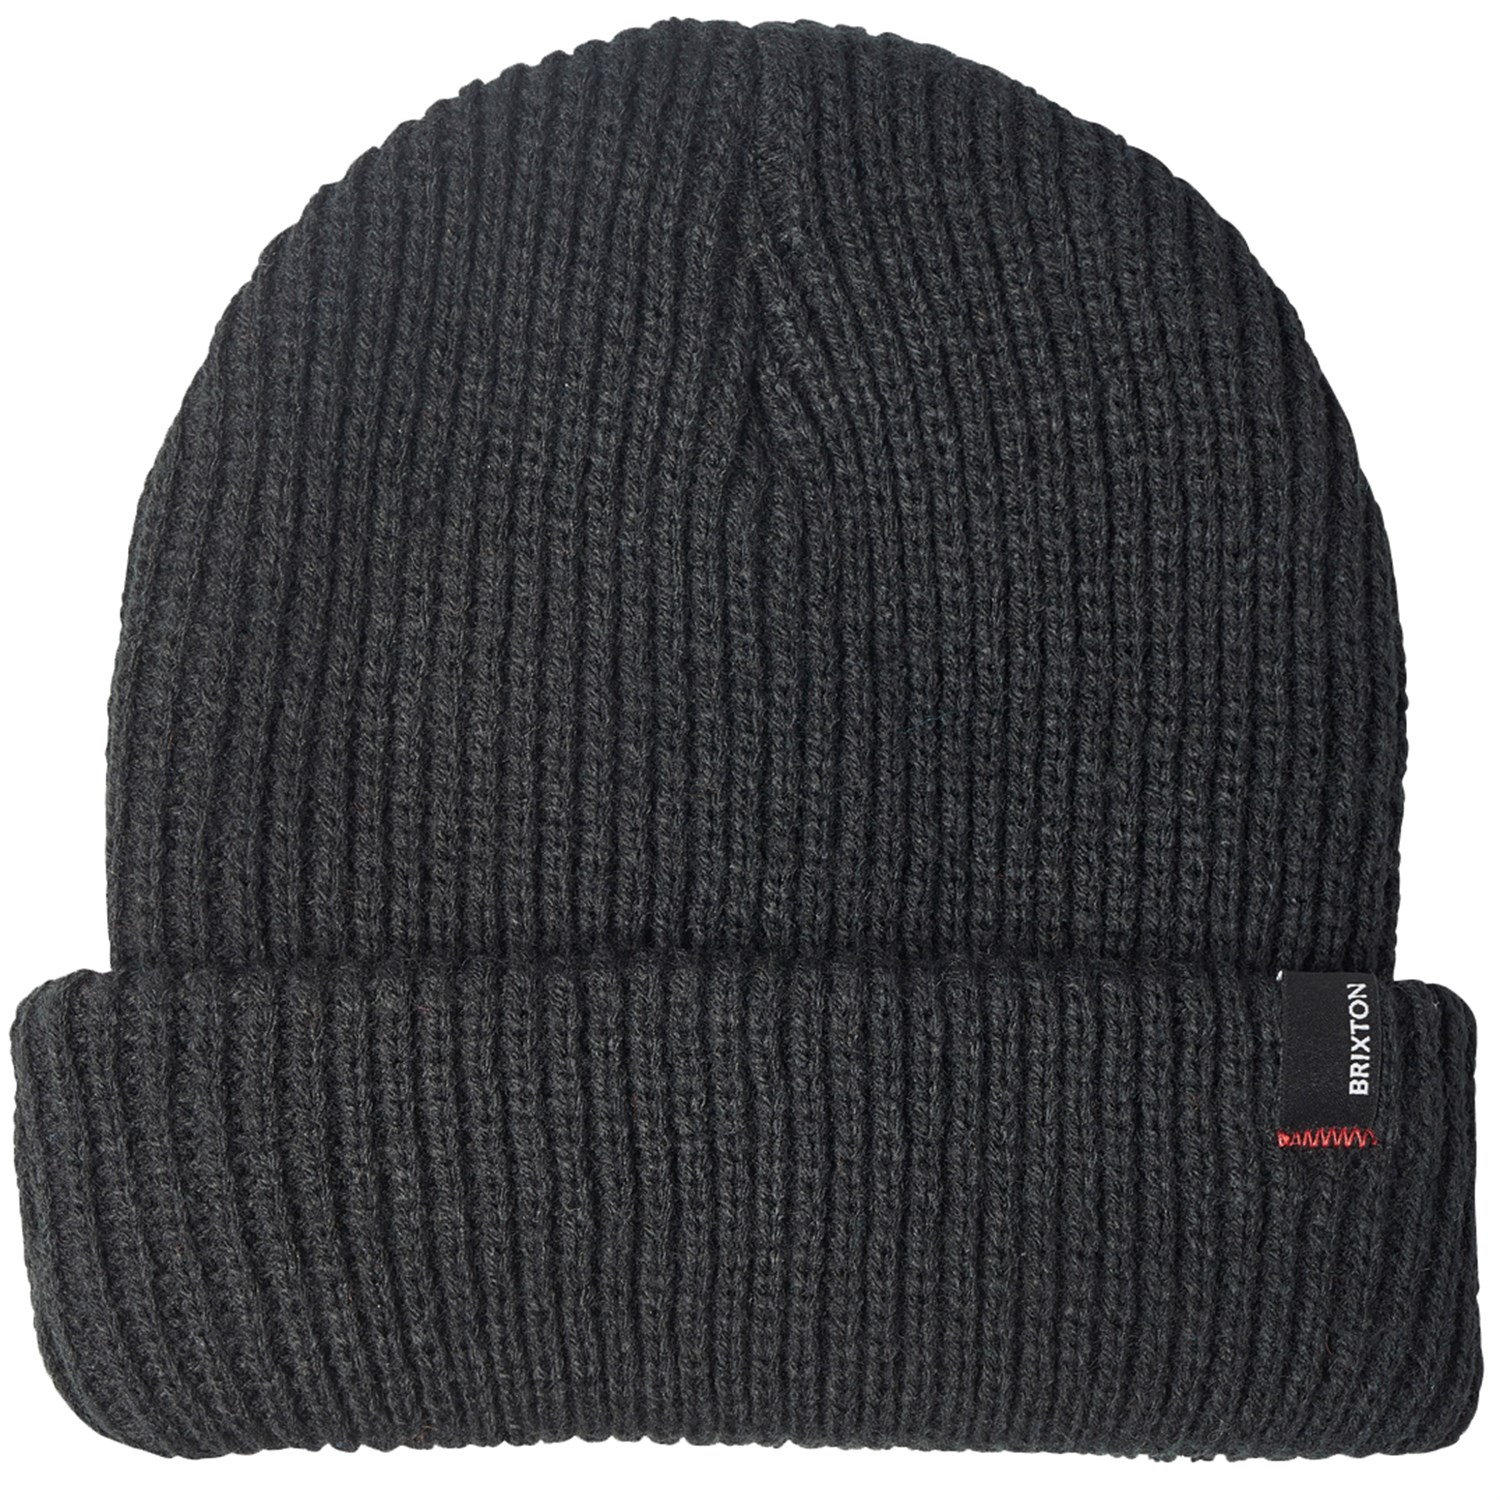 Шапка - Бини Brixton Polar, черный шапка бини шапка бини g shazami черная размер 54 57 черный